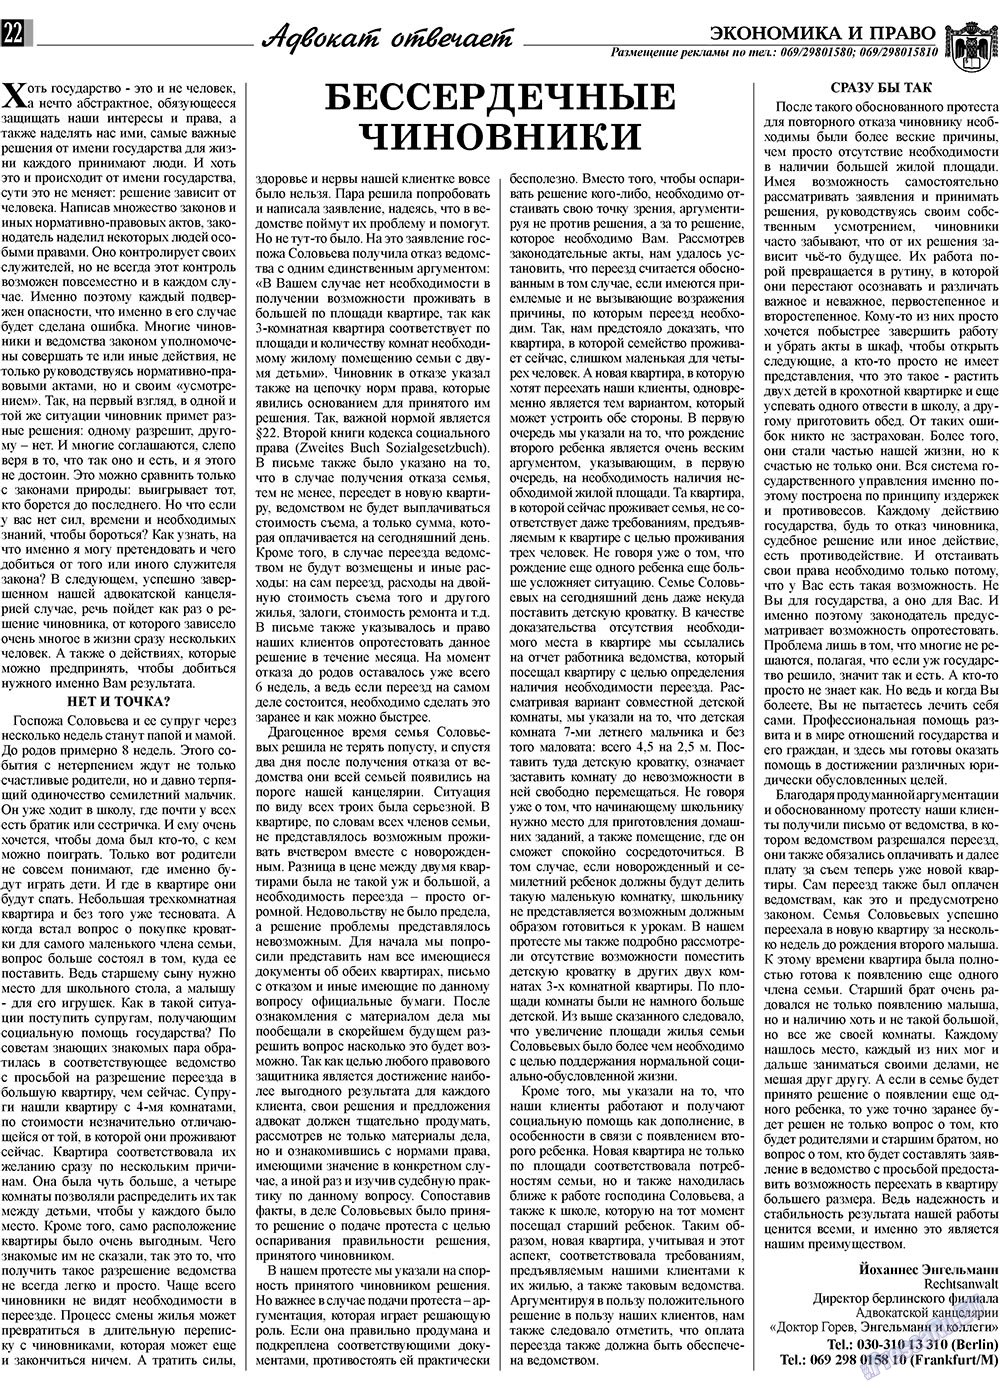 Экономика и право, газета. 2009 №11 стр.22